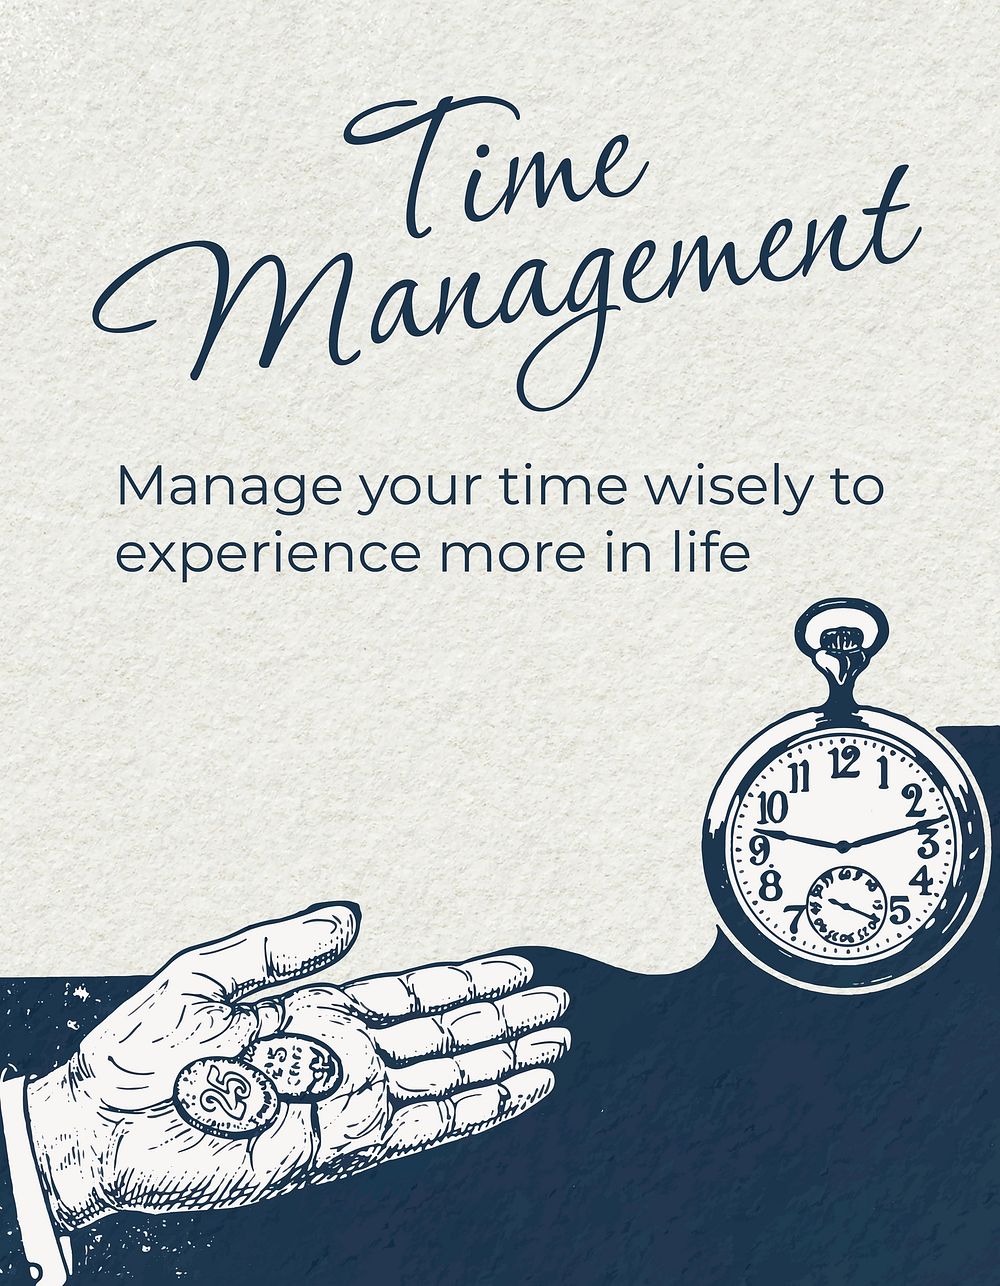 Time management flyer template, business vintage illustration psd